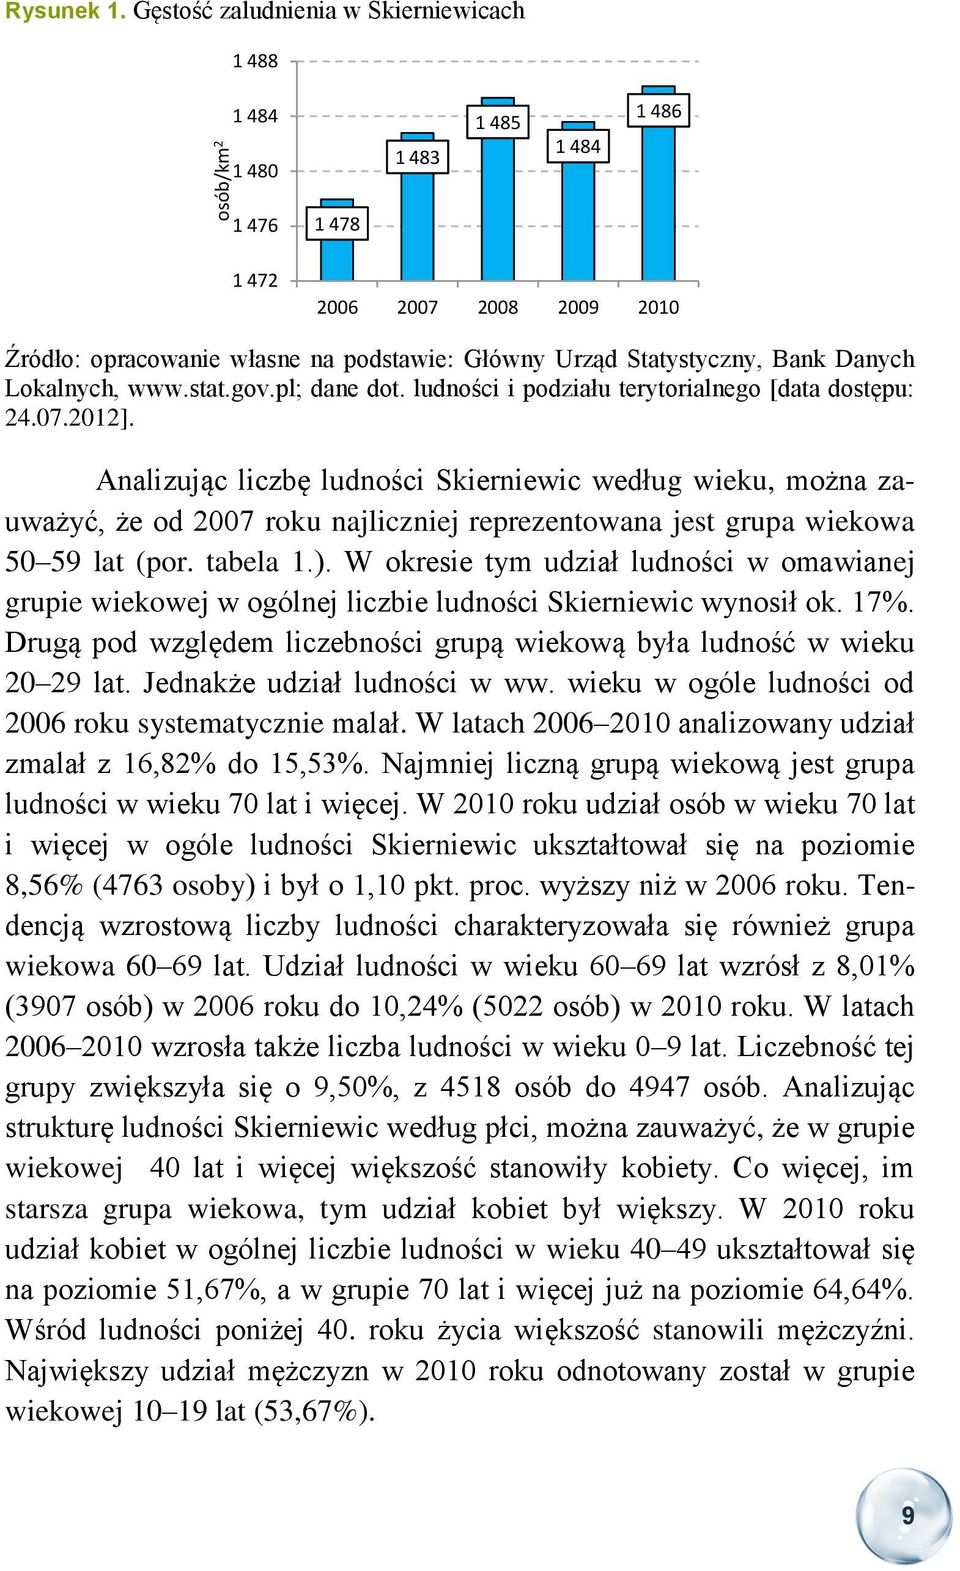 Bank Danych Lokalnych, www.stat.gov.pl; dane dot. ludności i podziału terytorialnego [data dostępu: 24.07.2012].